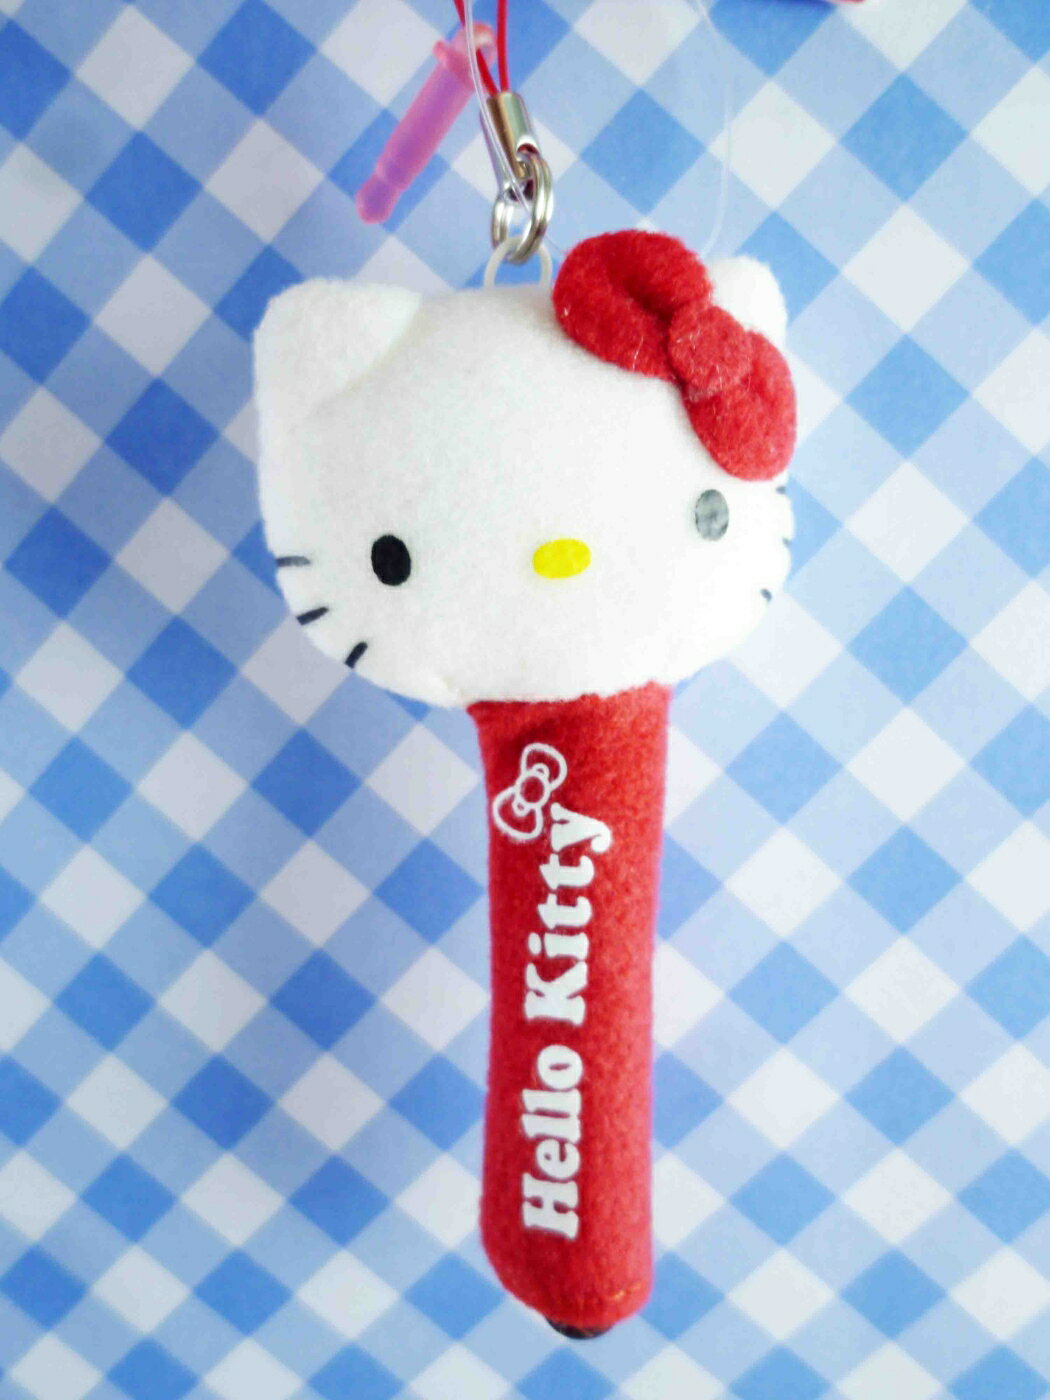 【震撼精品百貨】Hello Kitty 凱蒂貓 KITTY手機吊飾-絨毛觸控筆-紅色 震撼日式精品百貨